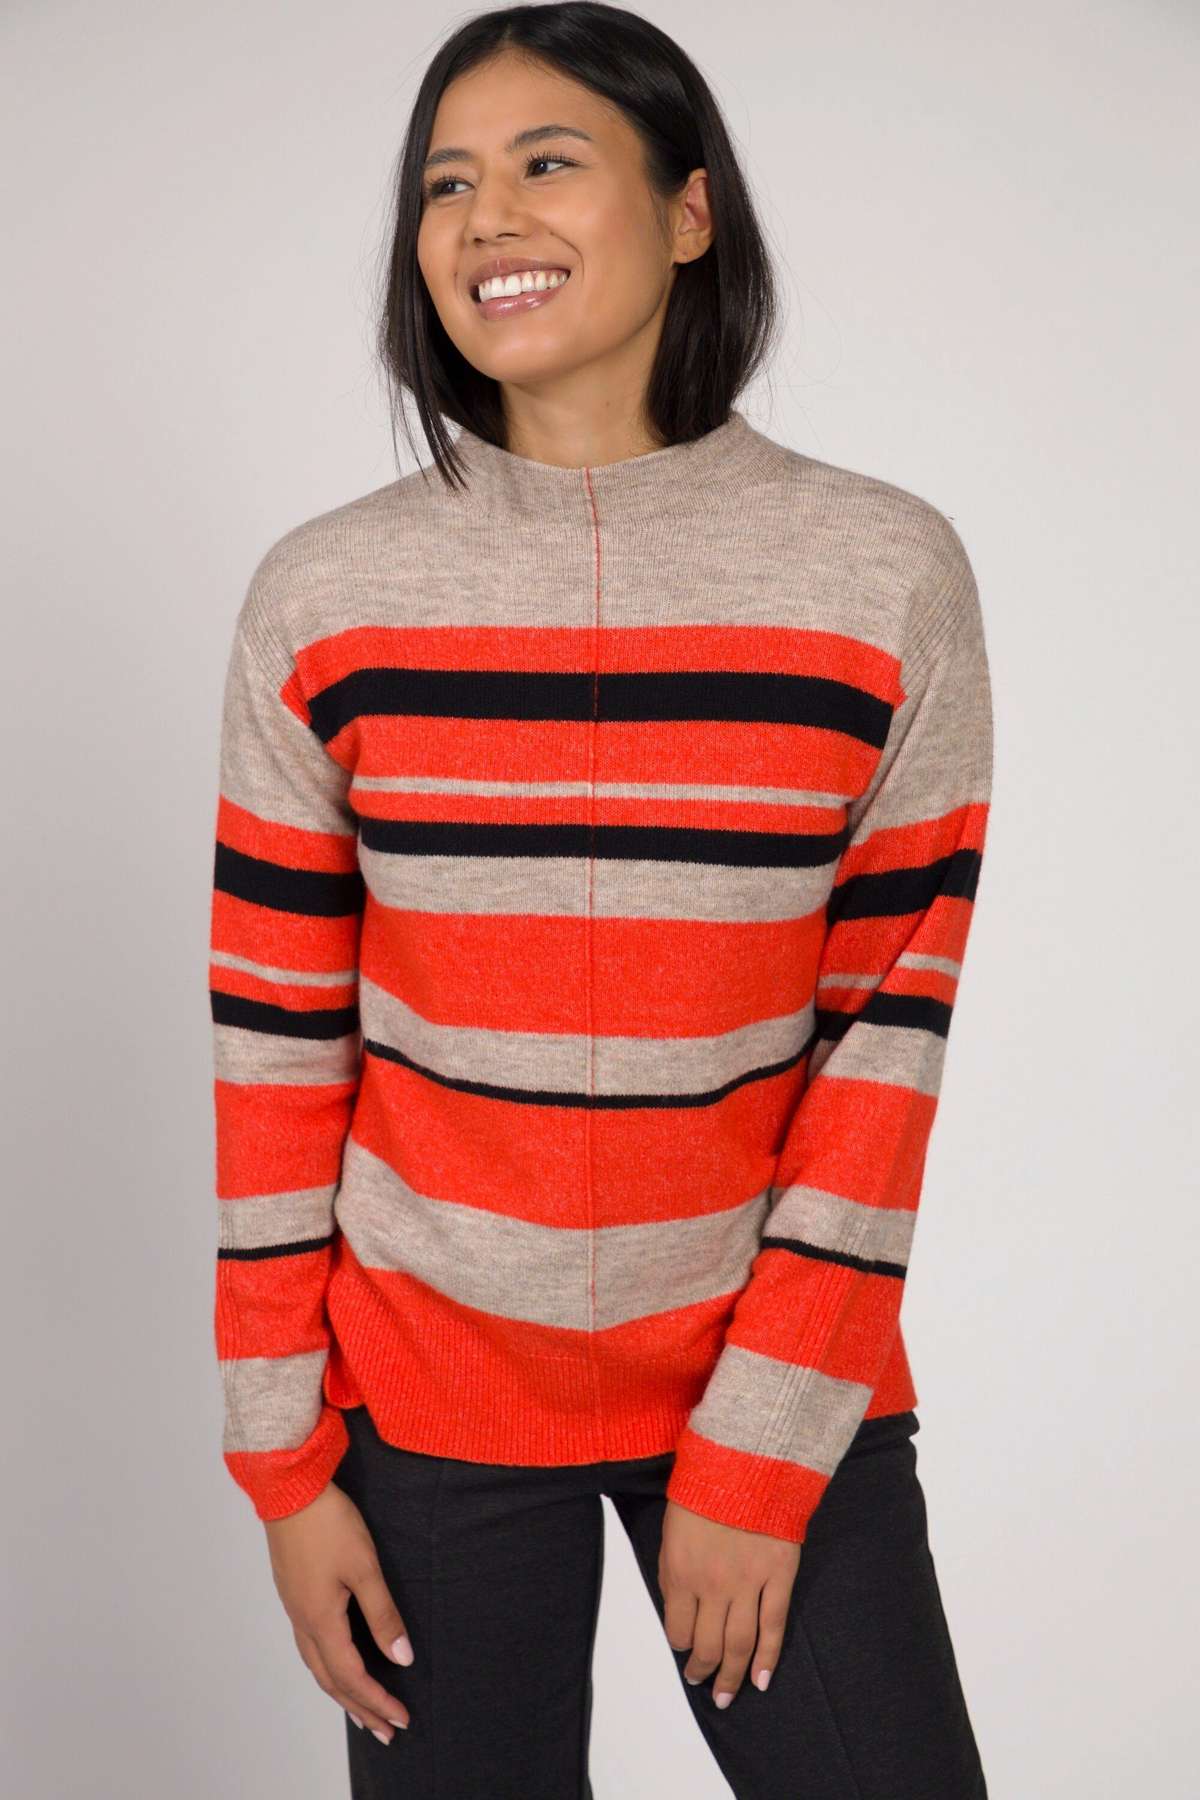 Свитшот-пуловер прямого кроя в полоску, воротник-стойка, длинный рукав